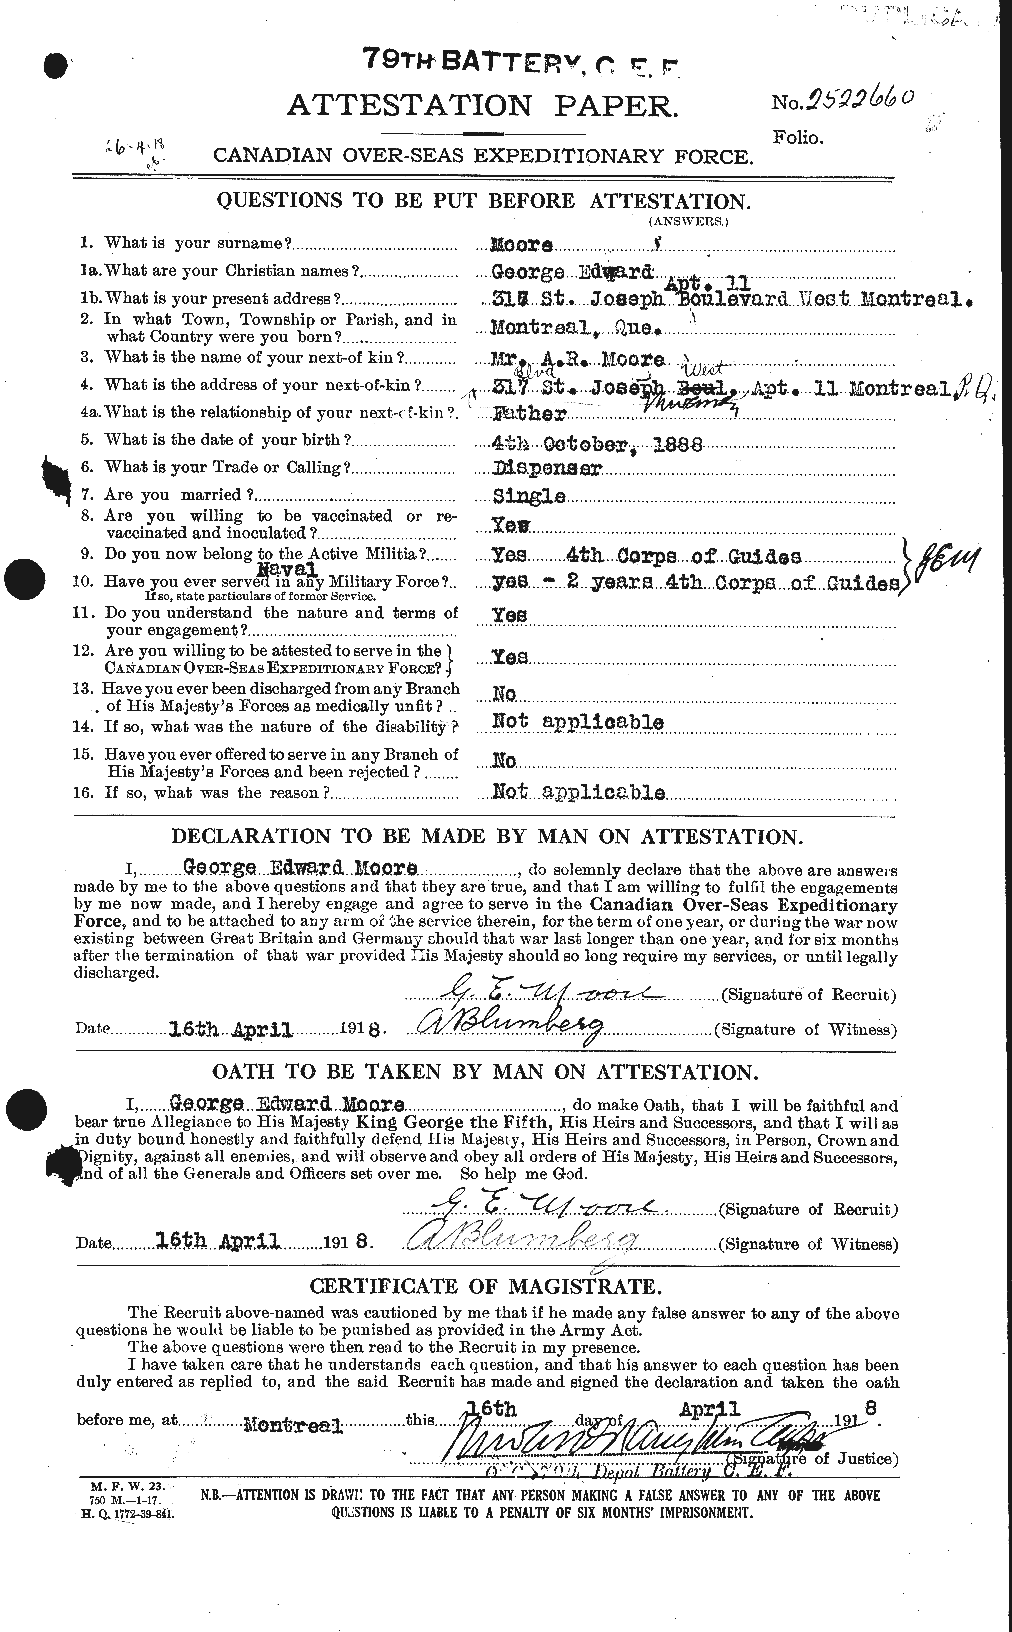 Dossiers du Personnel de la Première Guerre mondiale - CEC 501997a